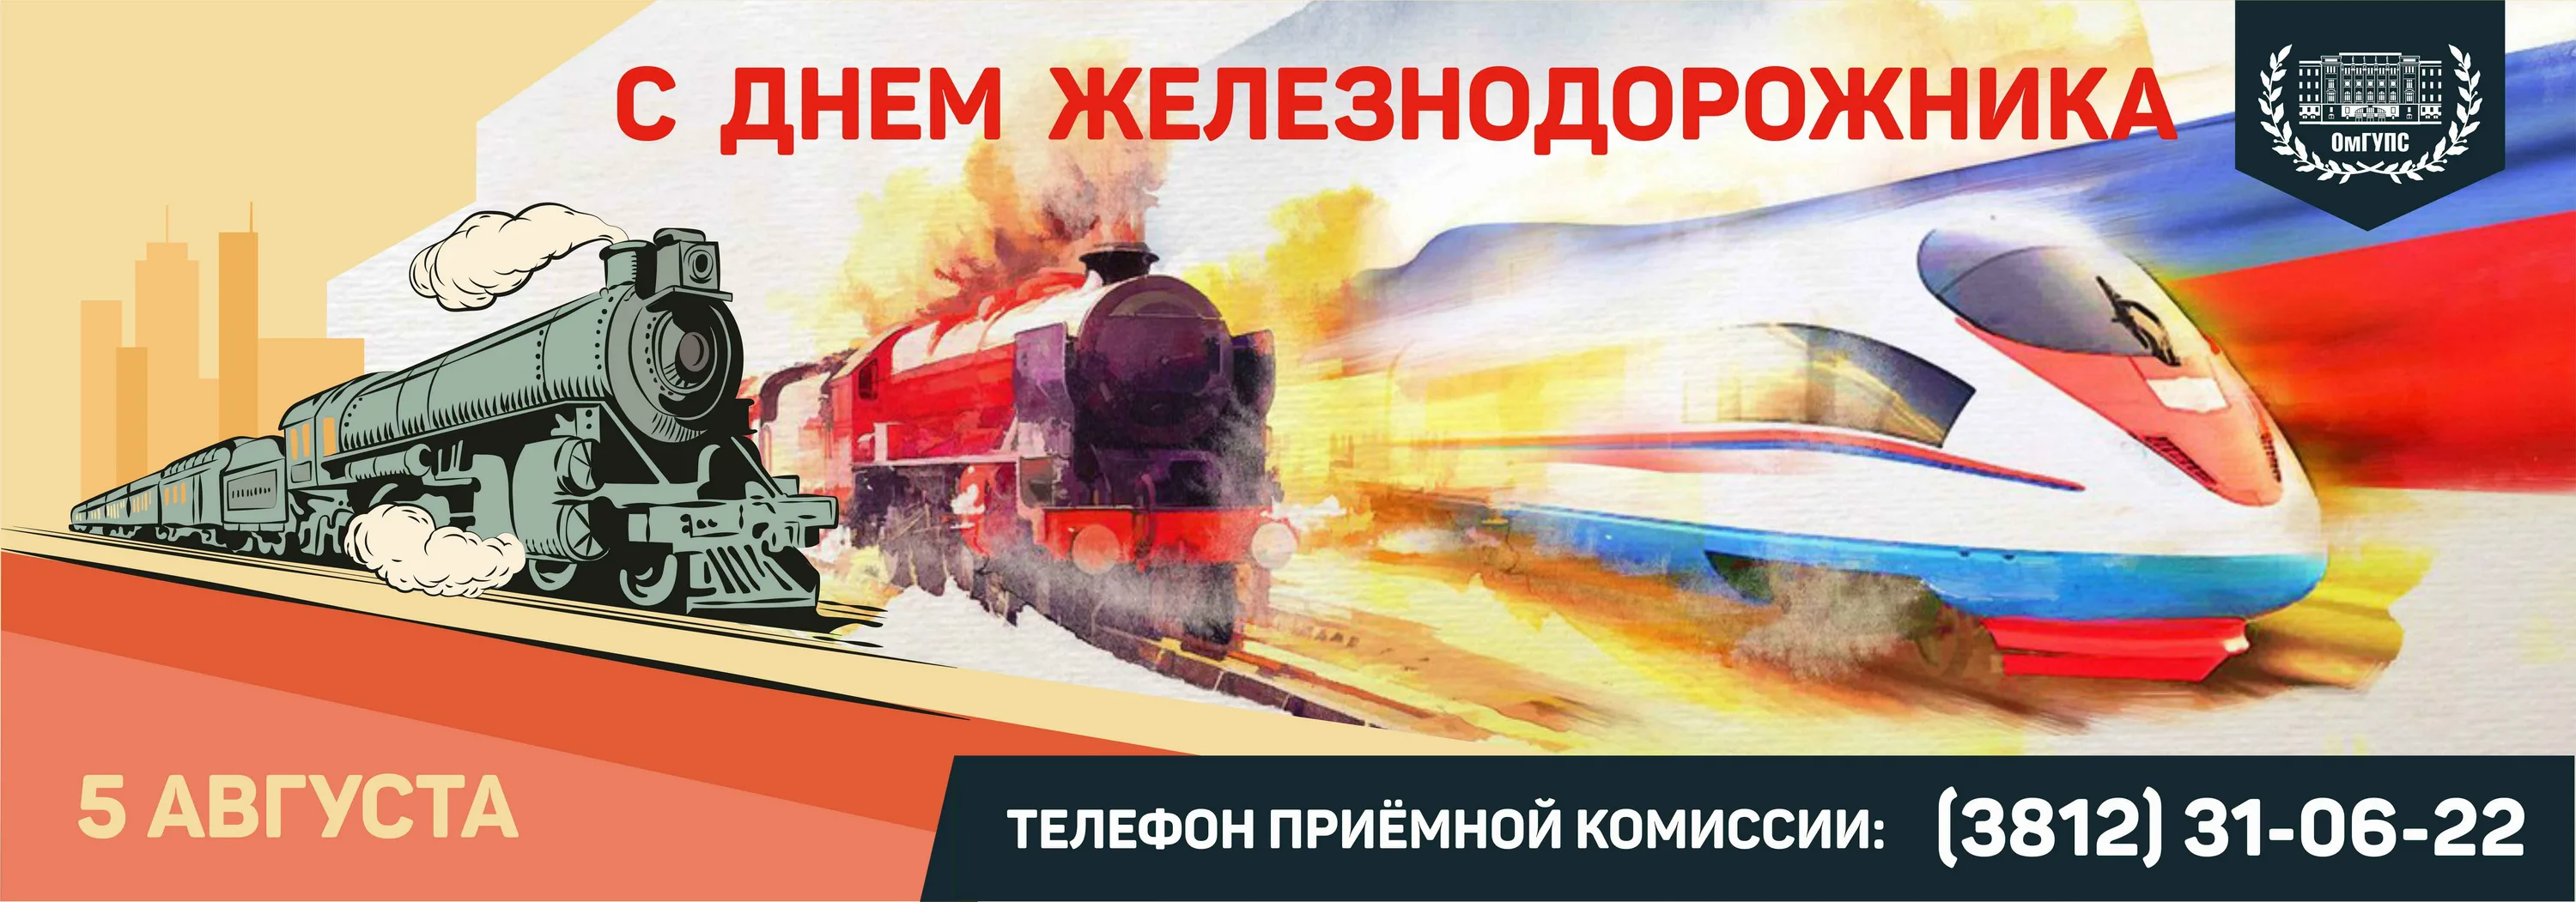 Фото Поздравление с днем железнодорожника Украины #72